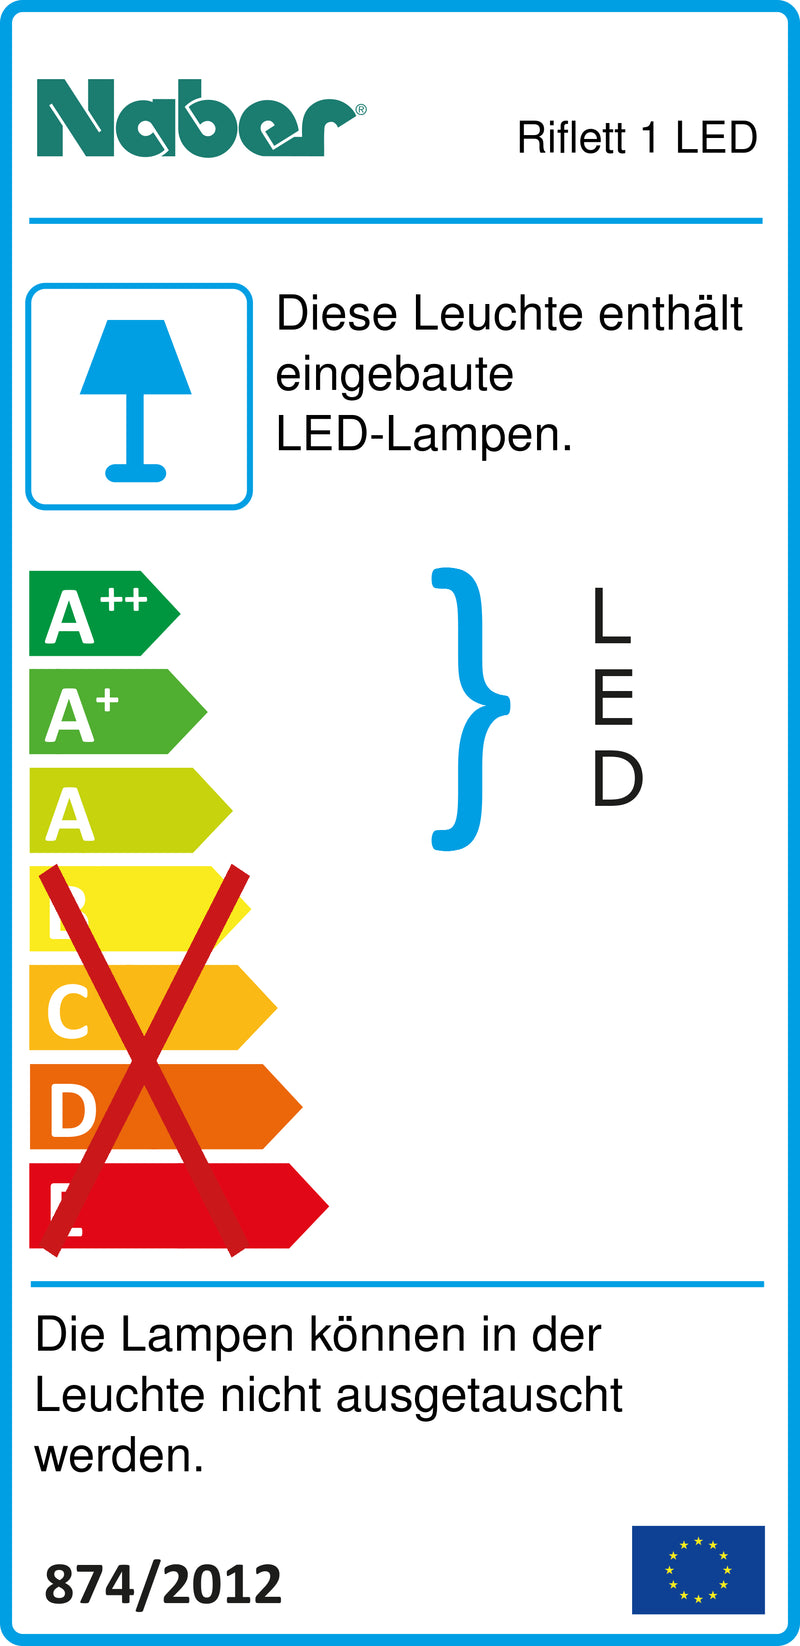 E-Label zu Zeichnung zu Riflett 1 LED als Variante Set-5, 4000 K neutralweiß von Naber GmbH in der Kategorie Lichttechnik in Österreich auf conceptshop.at